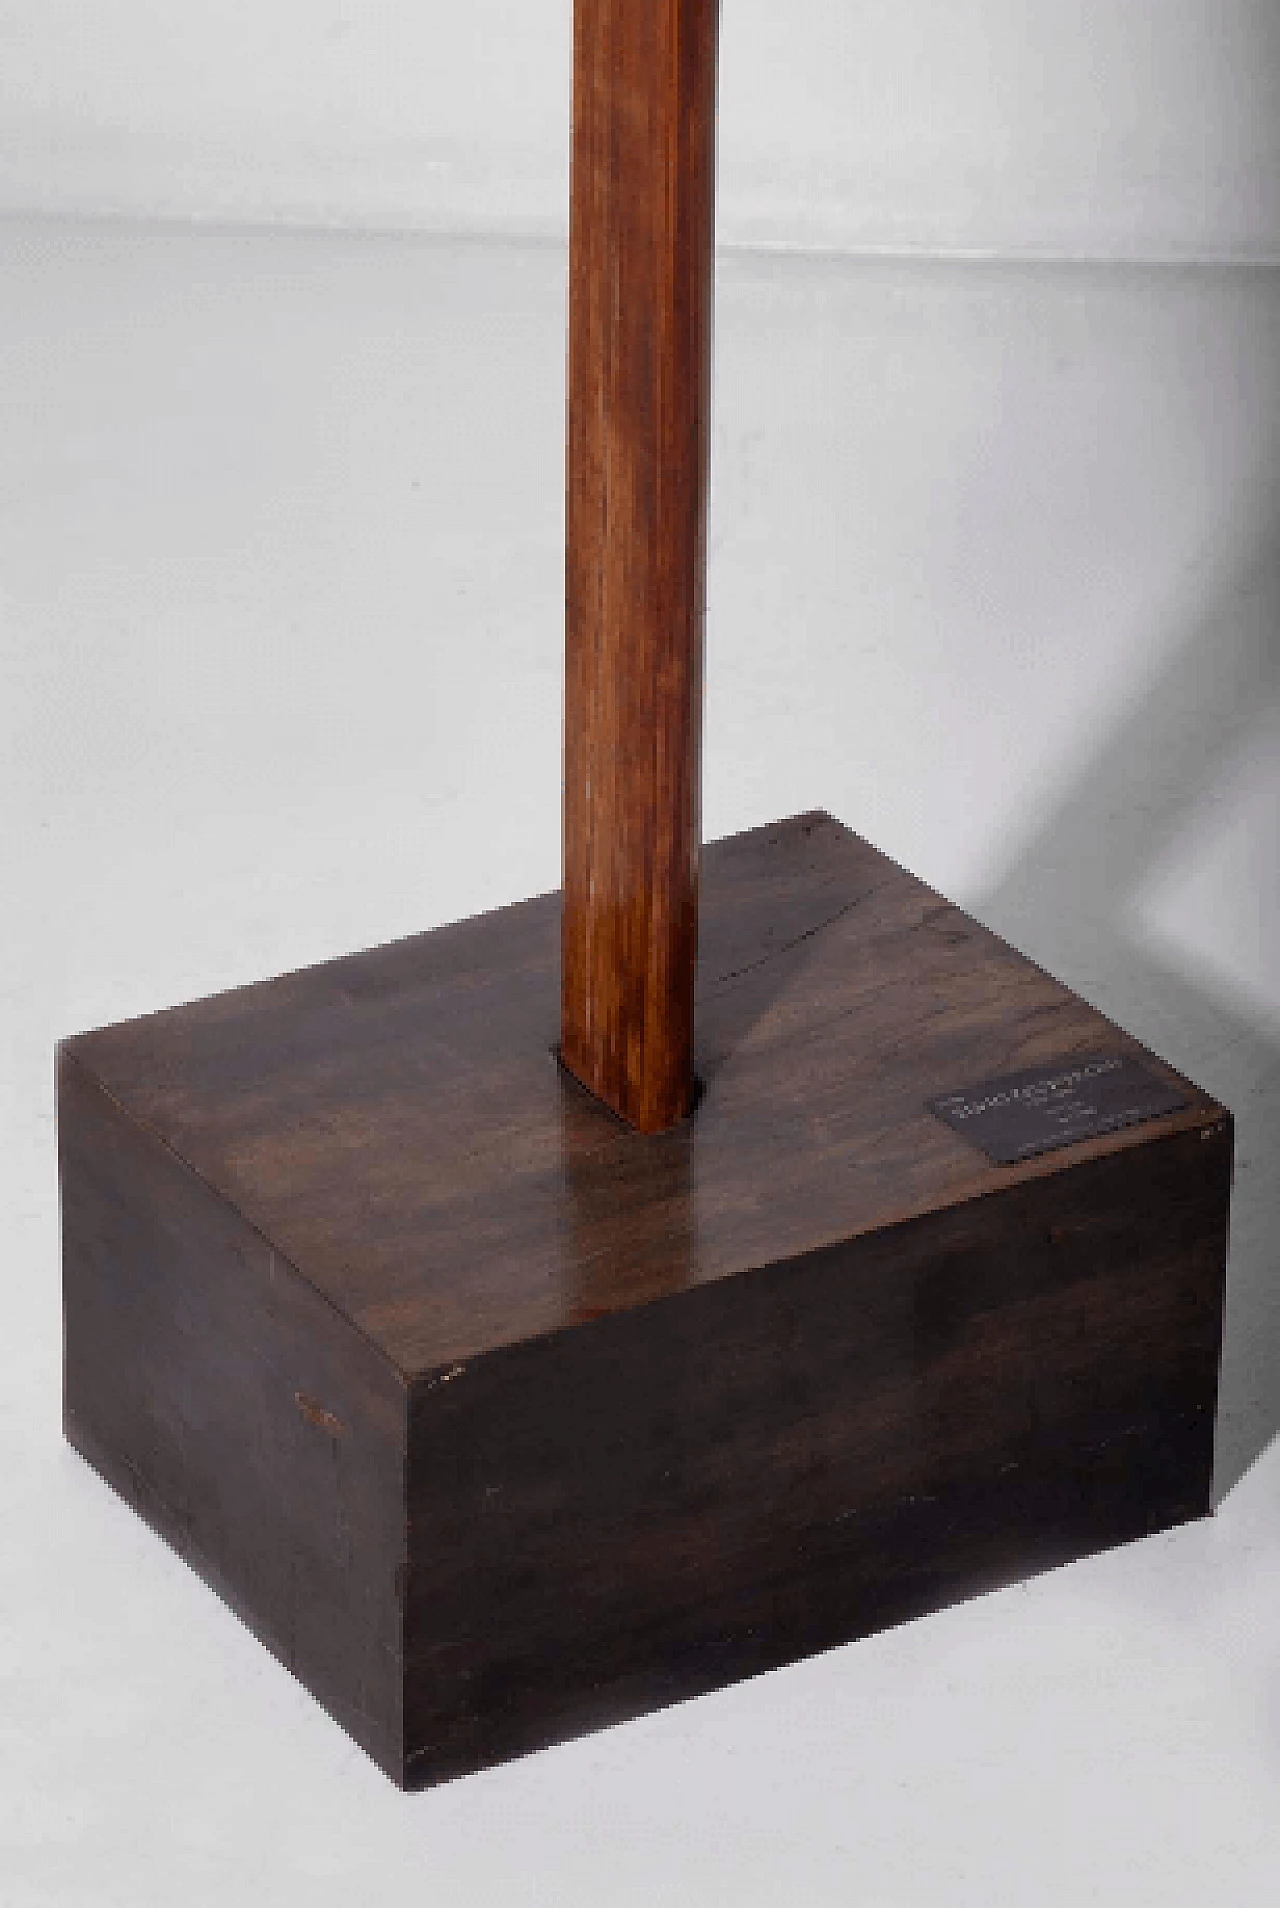 Elvio Becheroni, Totem, wood and iron sculpture, 1988 3